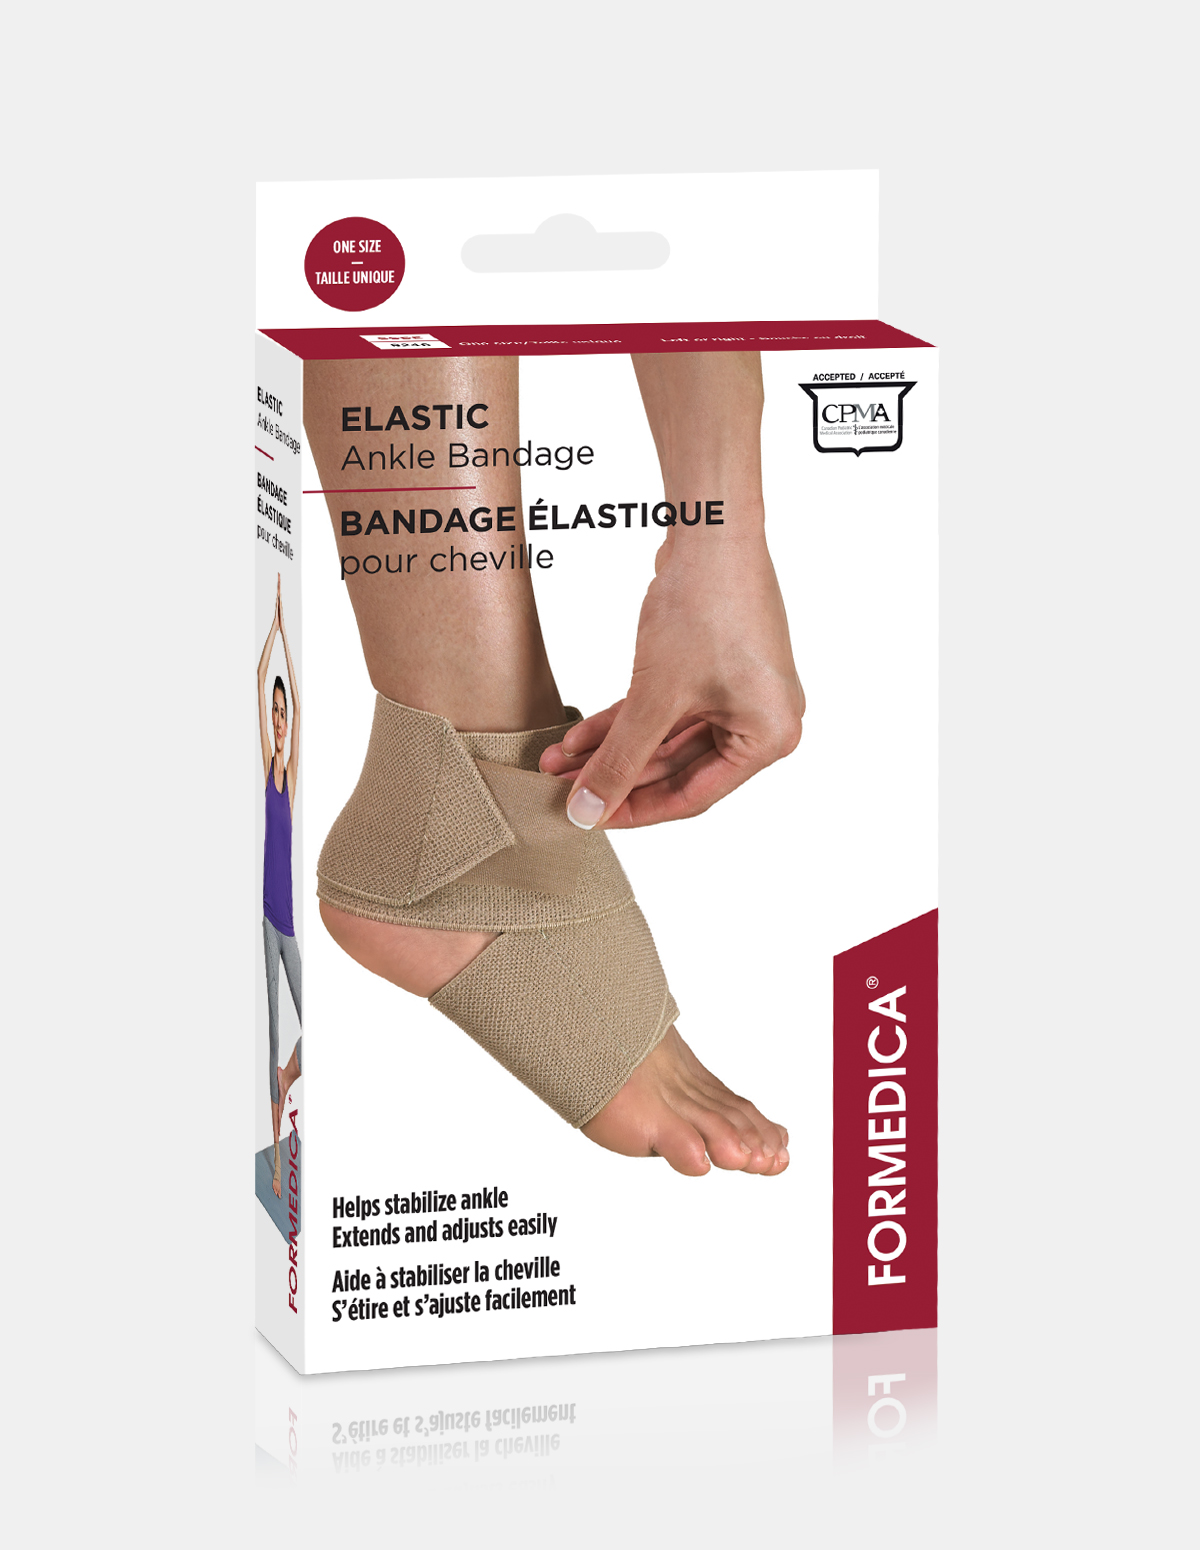 Elastic Ankle Bandage